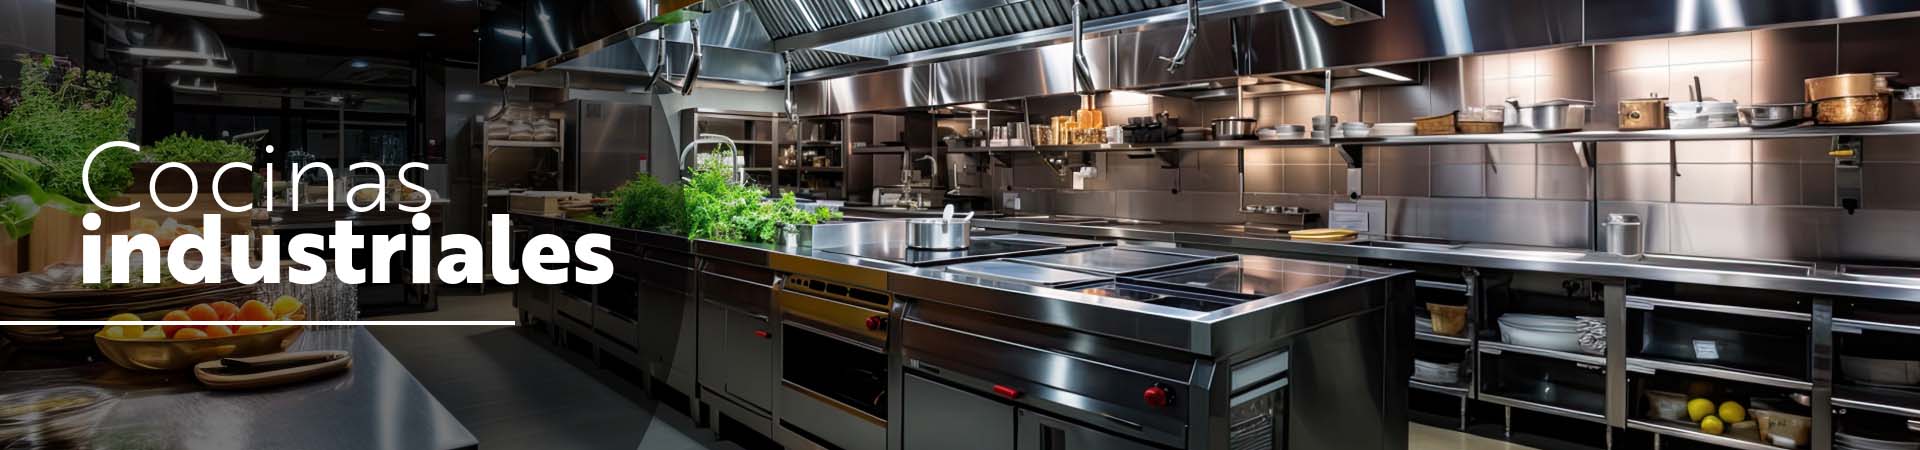 Cocinas industriales - todo en equipamiento para cocinas profesionales